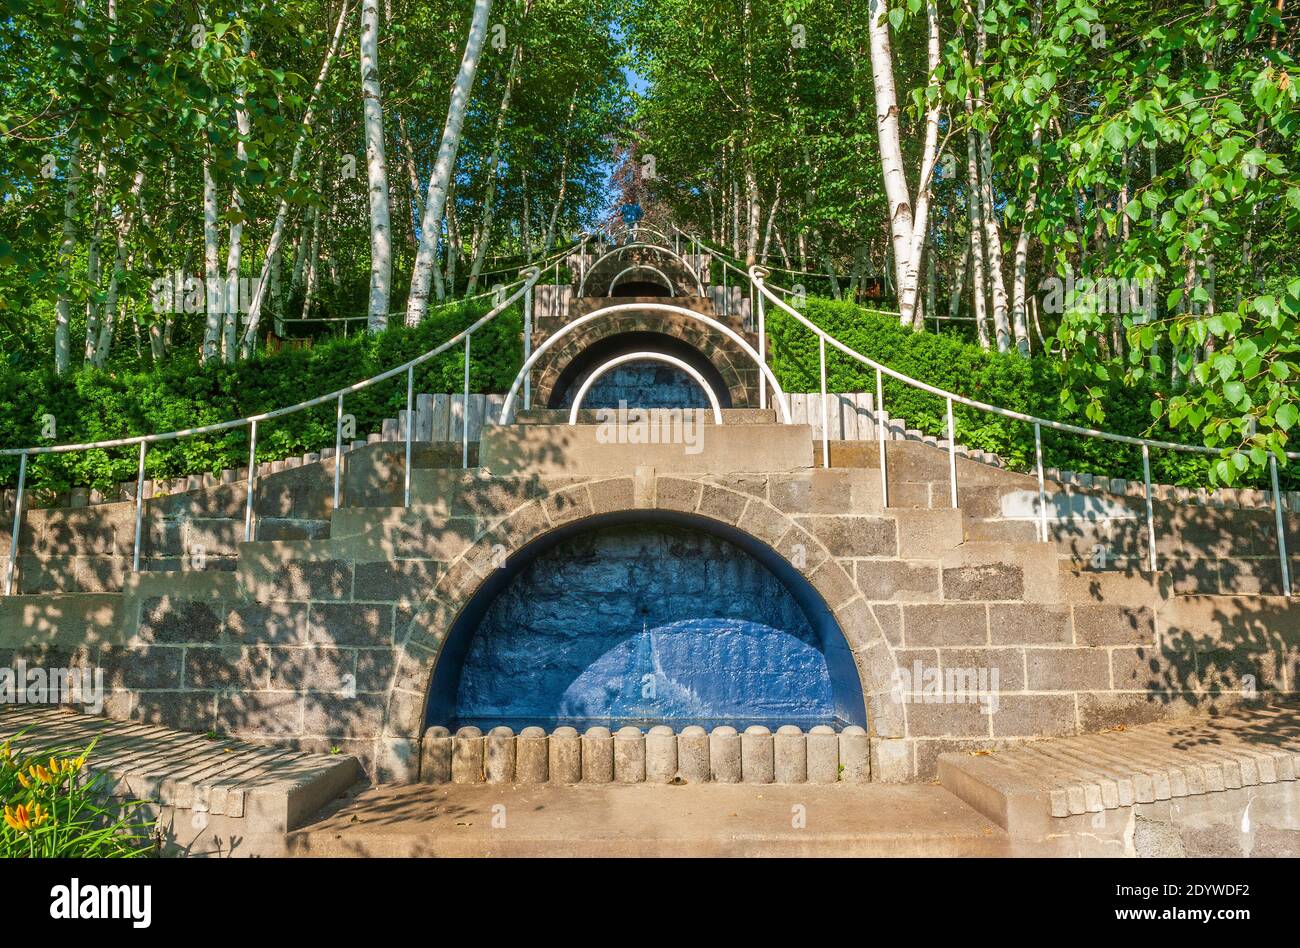 Blue Steps of Naumkeag - un double escalier à travers les haies à youches et les bouleaux. Balustrades blanches courbes et grottes peintes en bleu. Stockbridge, Massachusetts, États-Unis. Banque D'Images